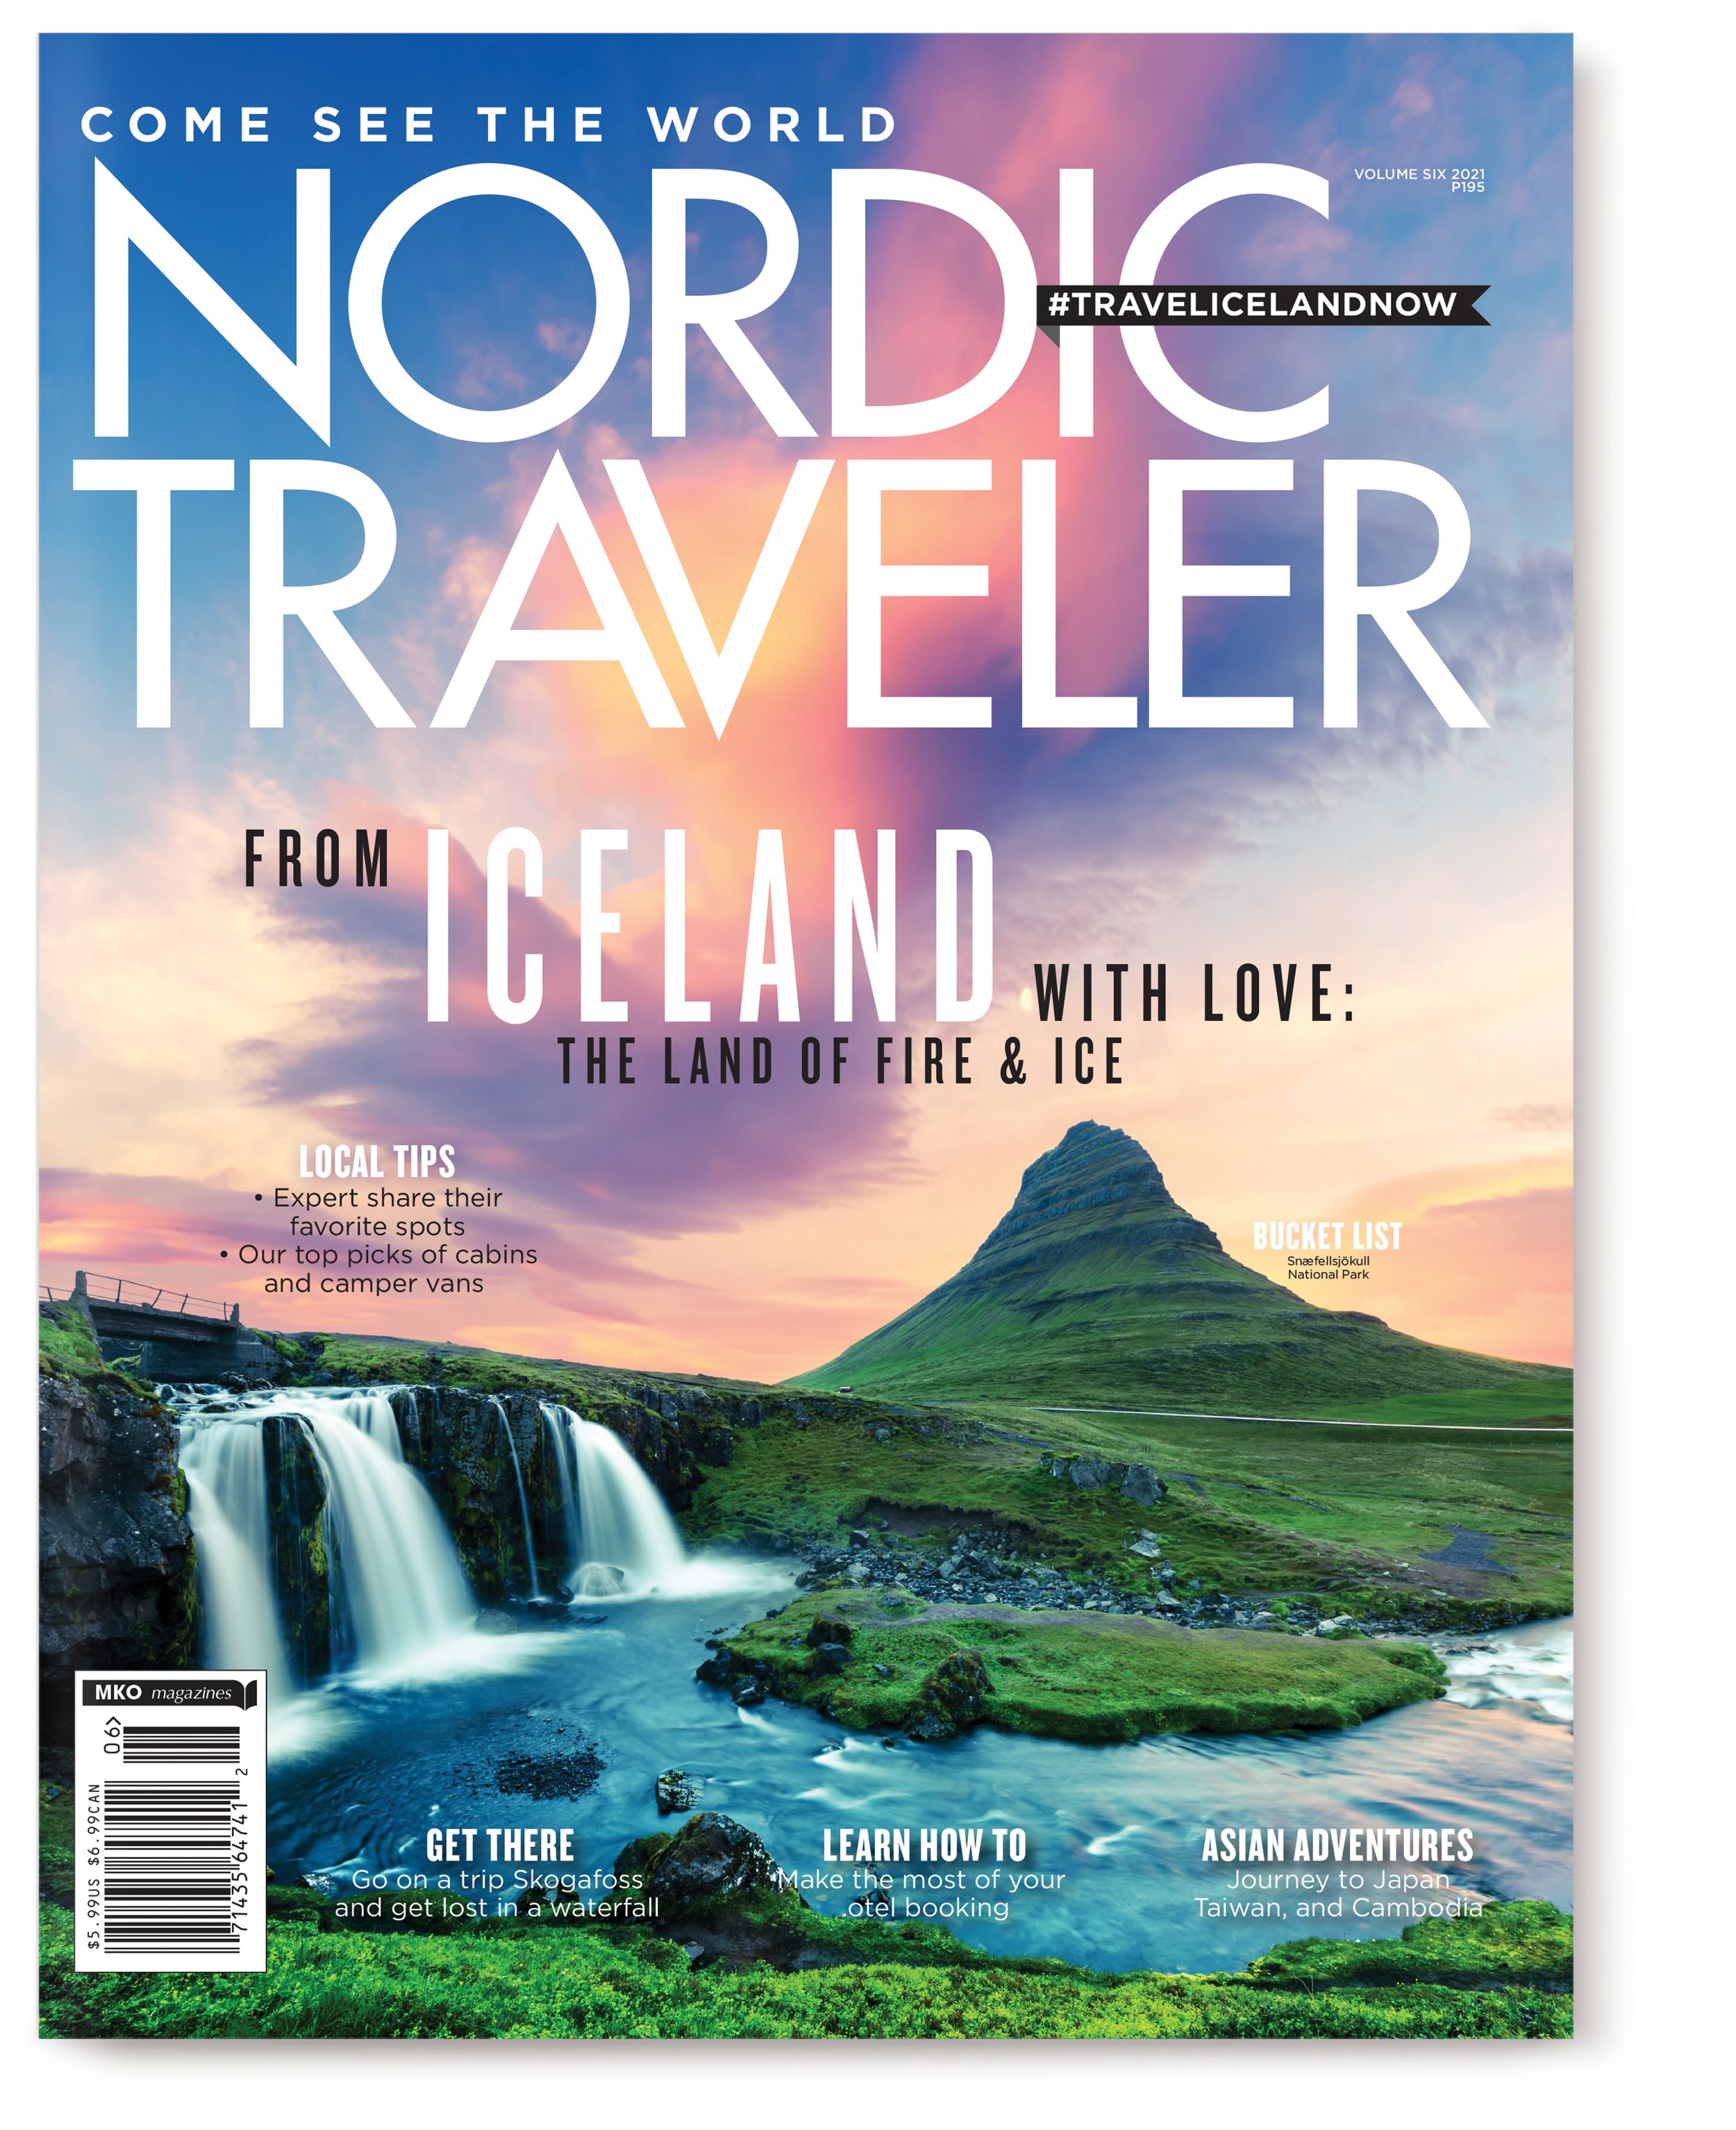 Nordic_Traveler_1.jpg